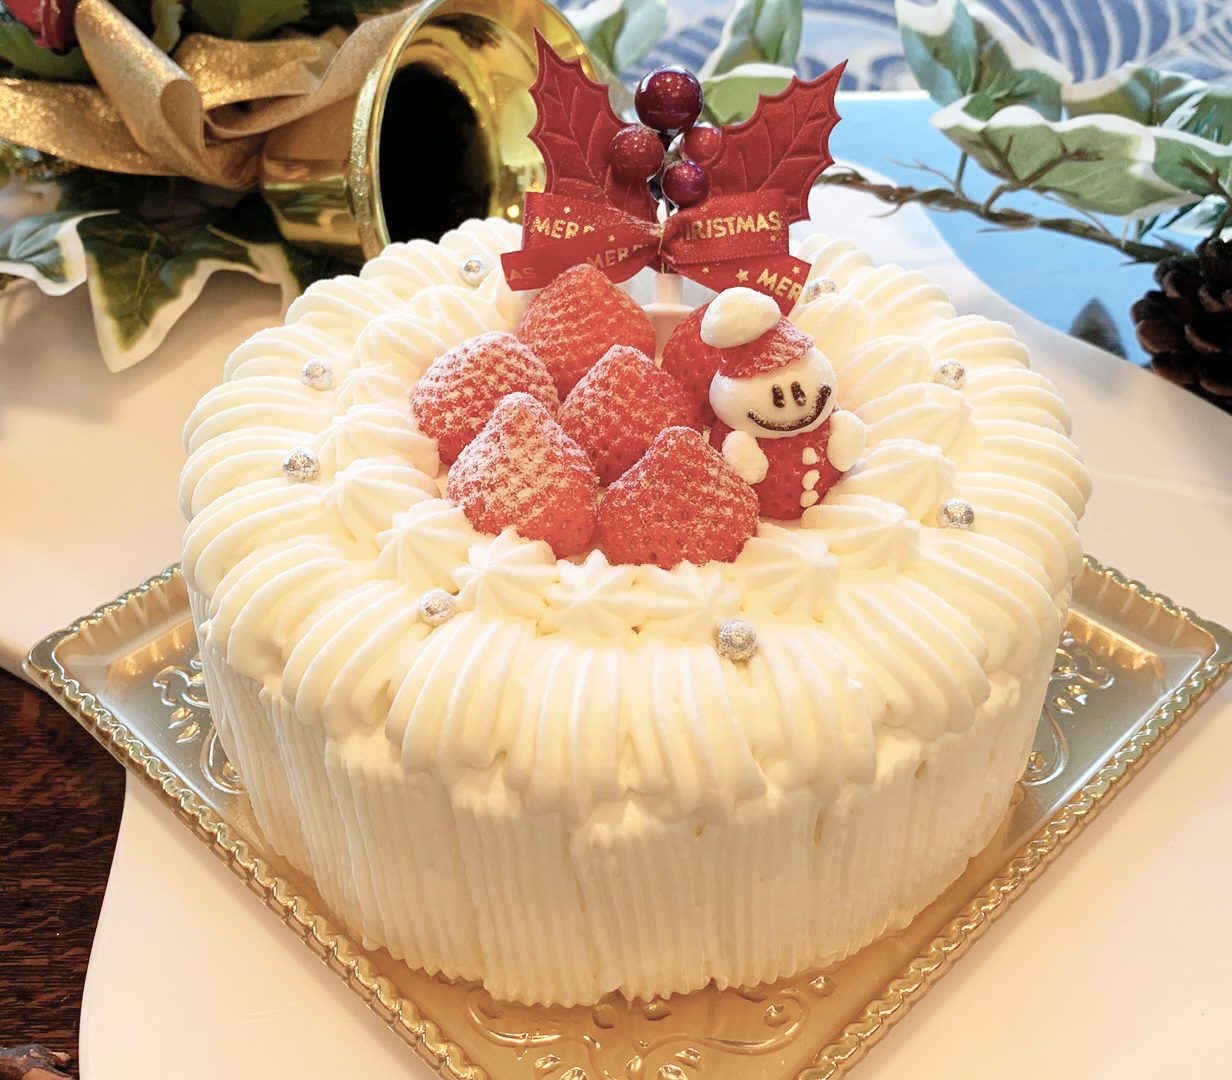 ホテルニューグランドのクリスマスケーキ 10月1日より予約スタート 神奈川 東京多摩のご近所情報 レアリア